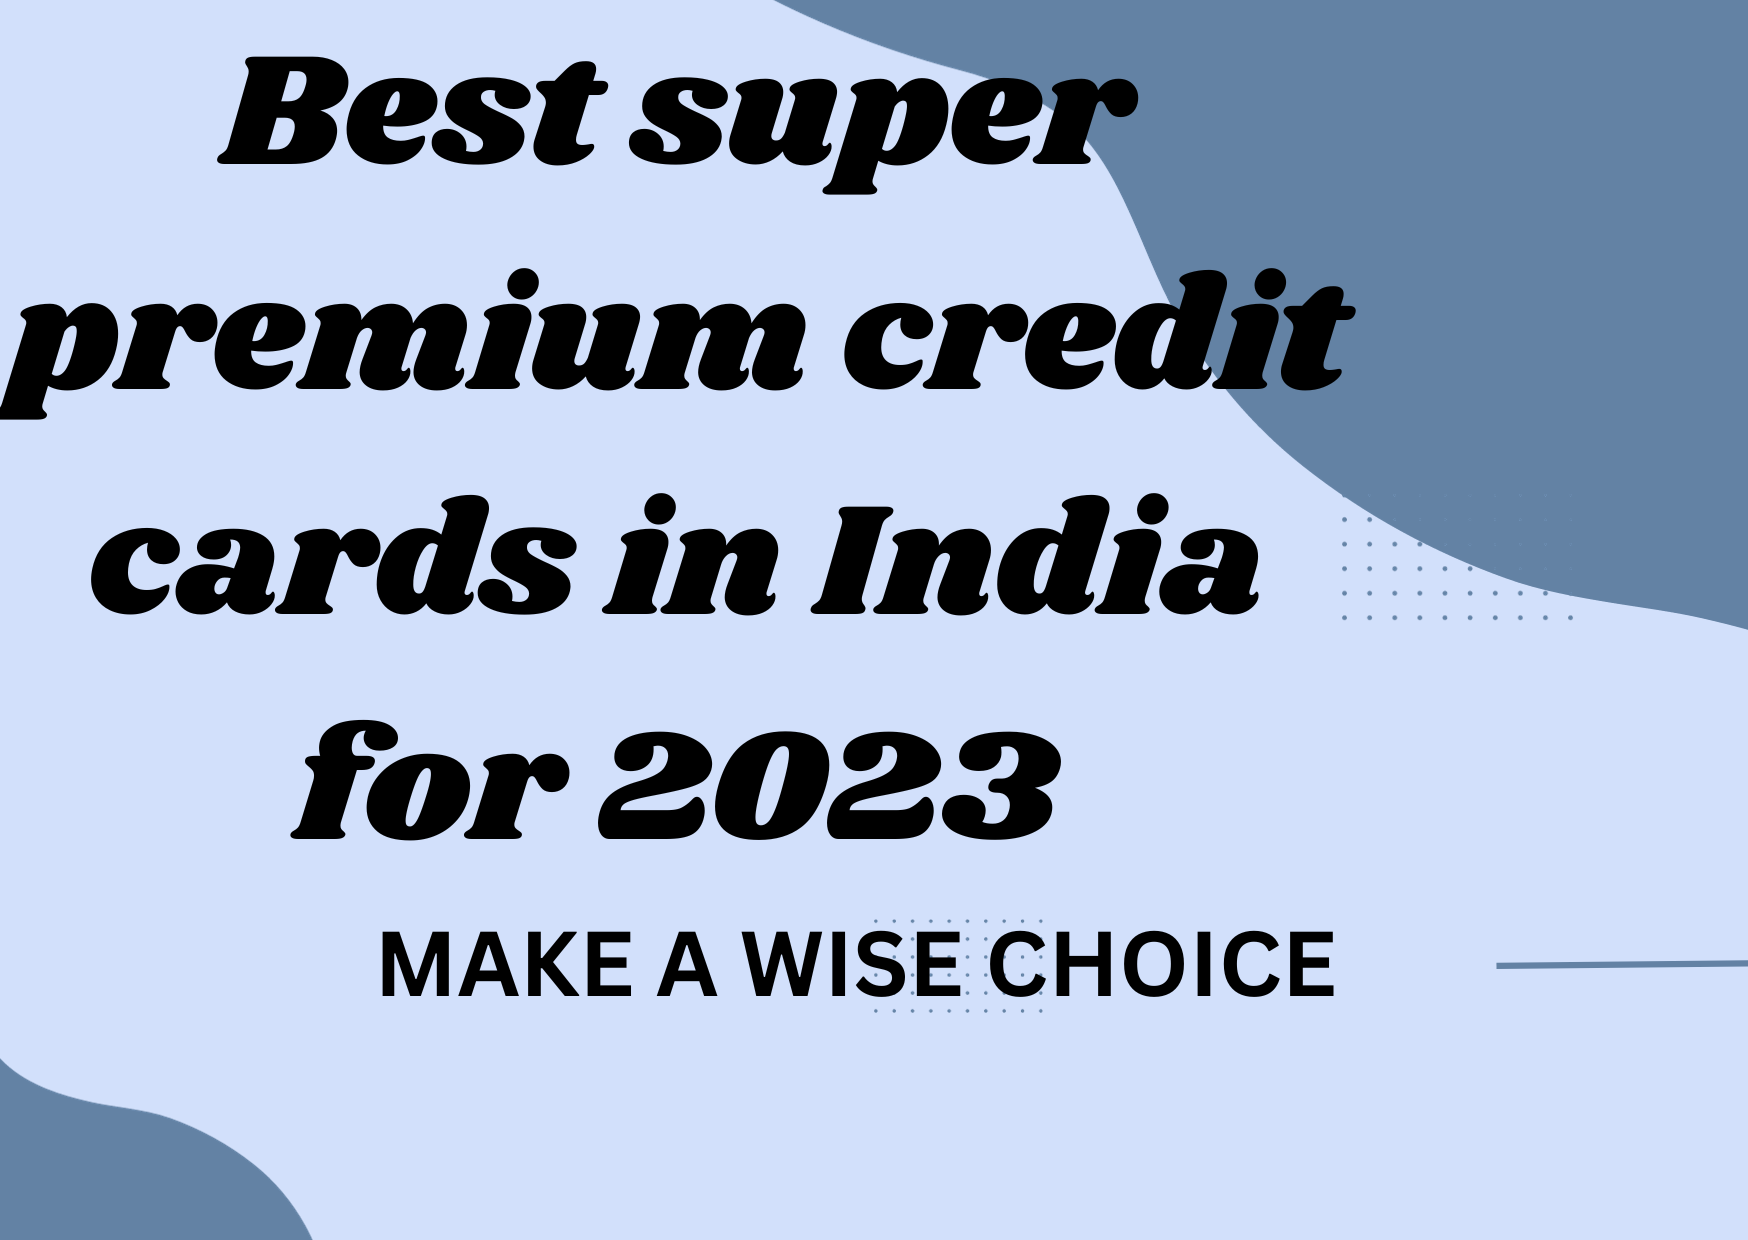 Top super premium credit cards in India for 2023